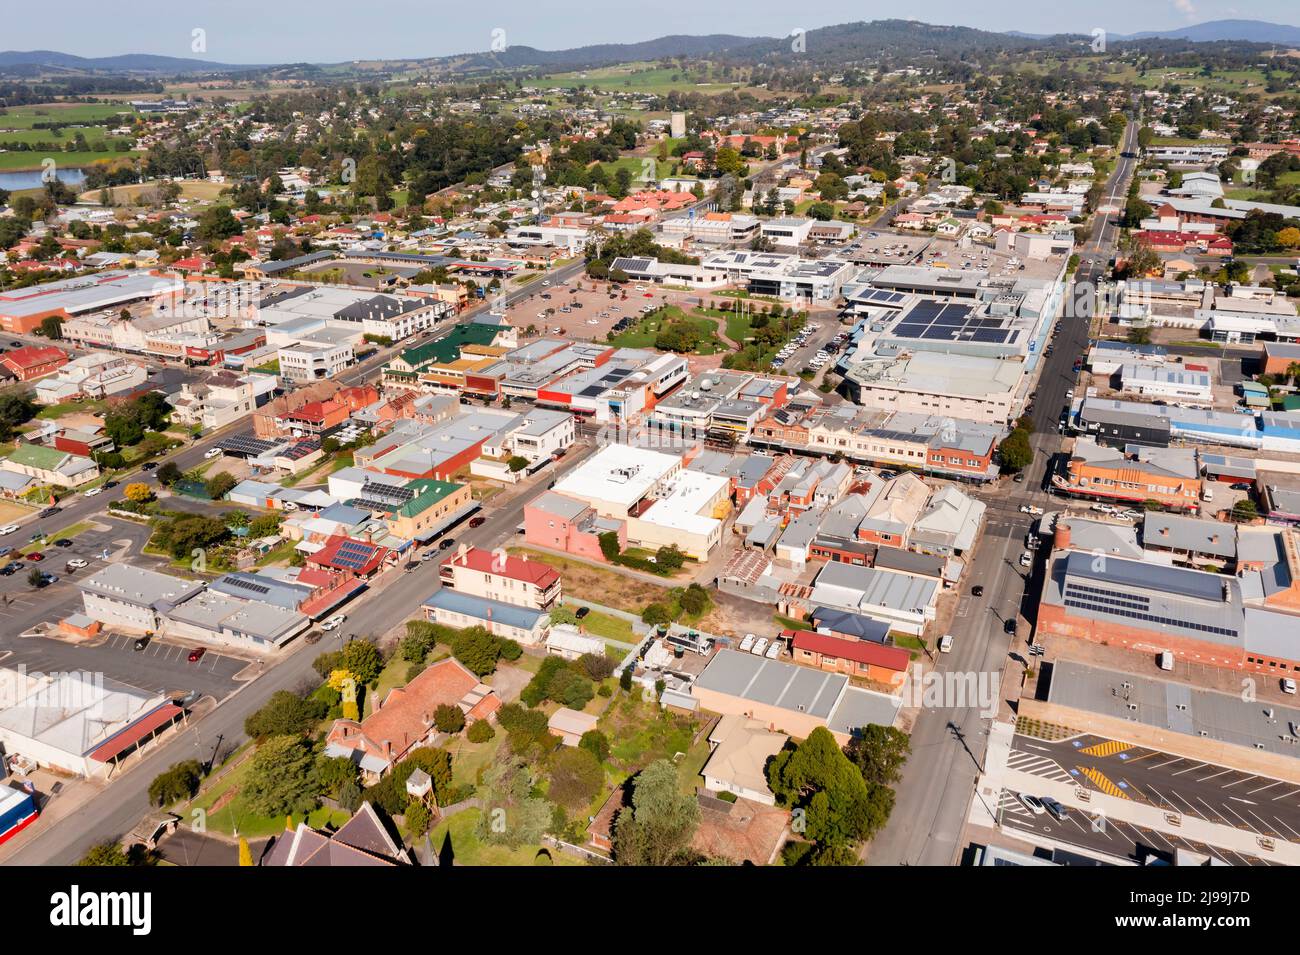 Innenstadt von Bega Stadt in der Landwirtschaft ländlichen Landschaft von Australien - Luftaufnahme über die Hauptstraßen und lokalen Unternehmen. Stockfoto